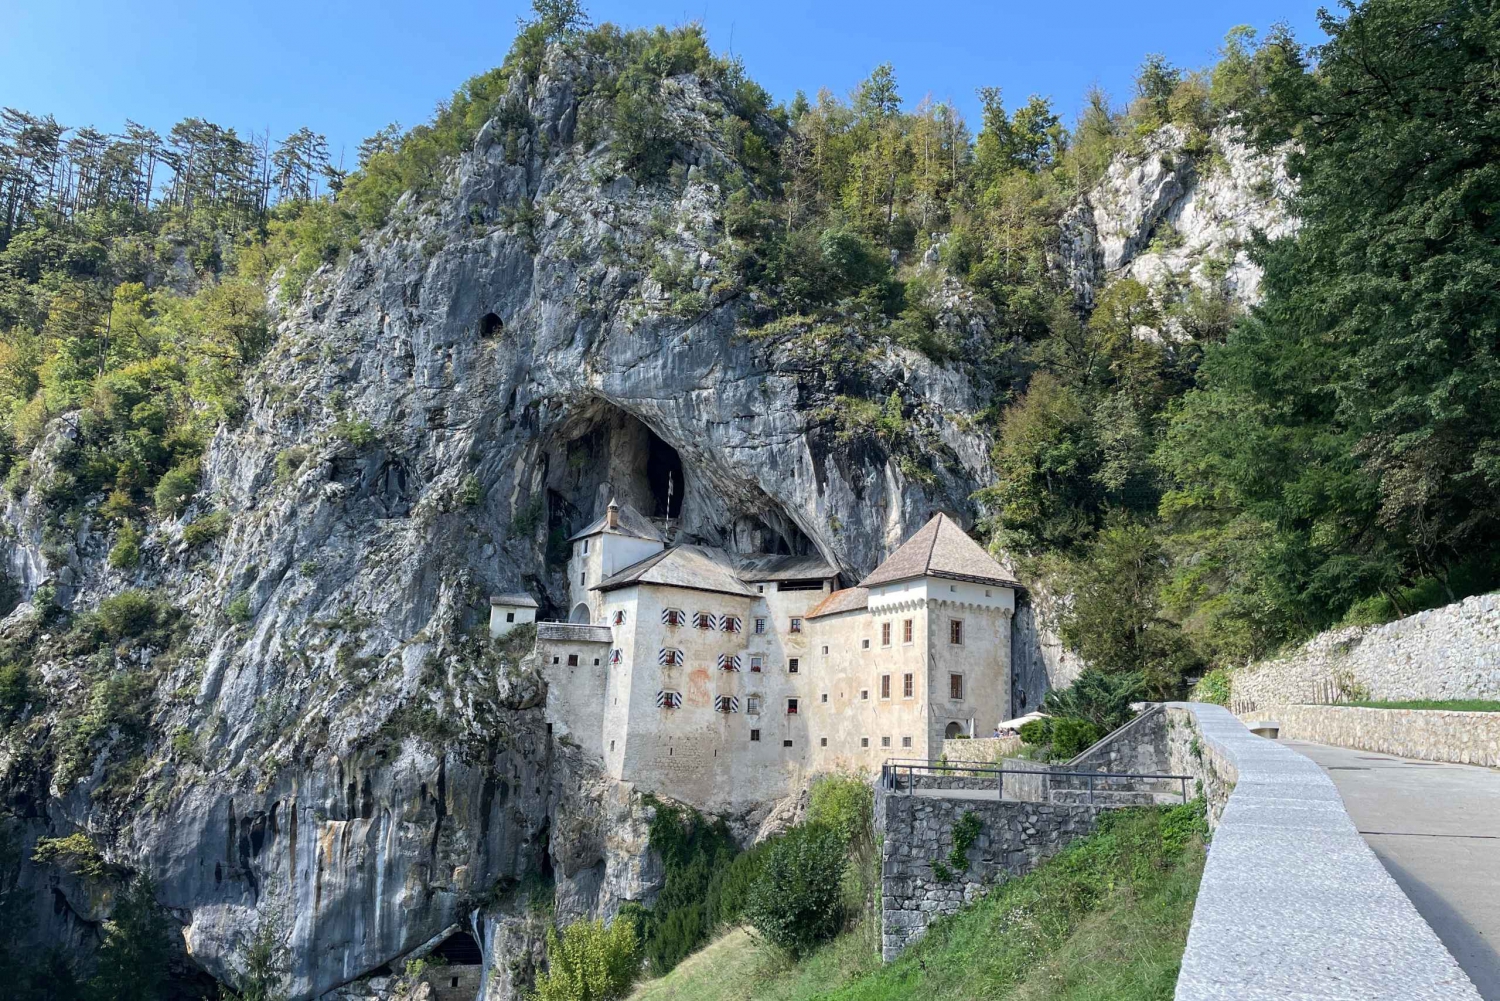 Fra Zagreb: Tur til Ljubljana, Postojna-grotten og Predjama-slottet